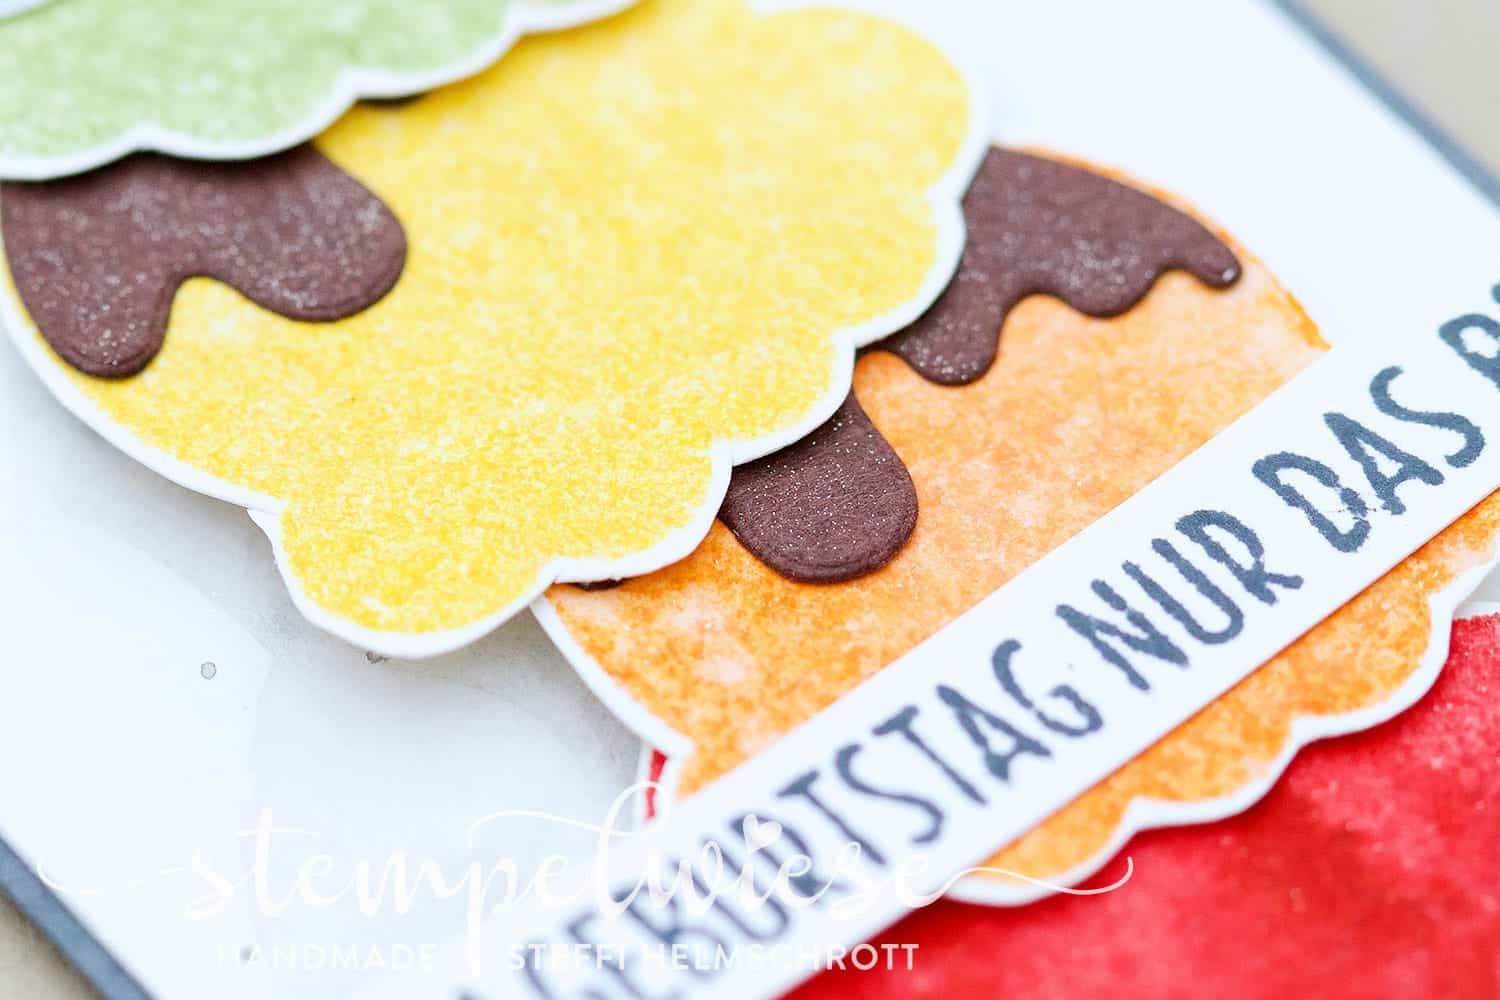 Geburtstagskarte mit bunten Eiskugeln - Ei, Eis, Baby! - Regenbogen - Stampin’ Up! - Stempelwiese